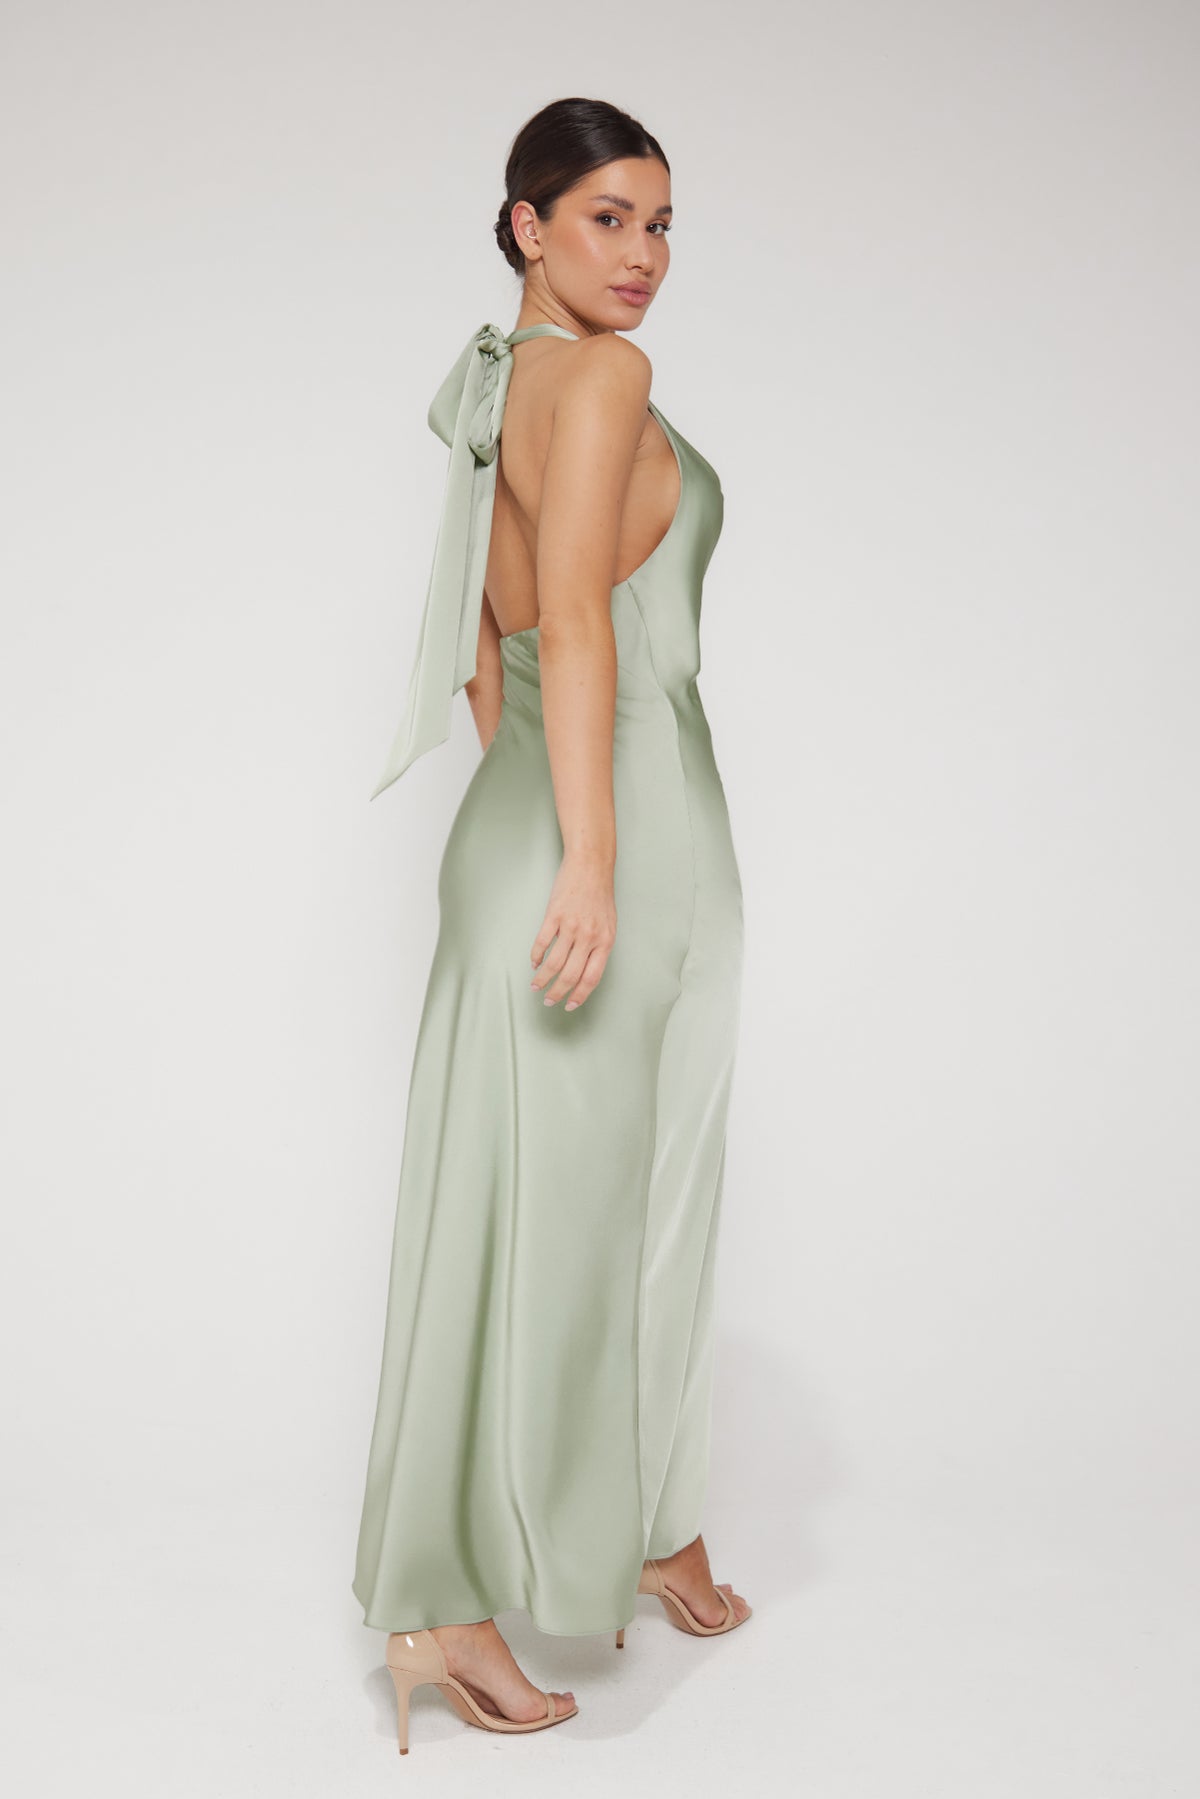 Aurora Cowl Halter Neck Slip Dress - Sage Green